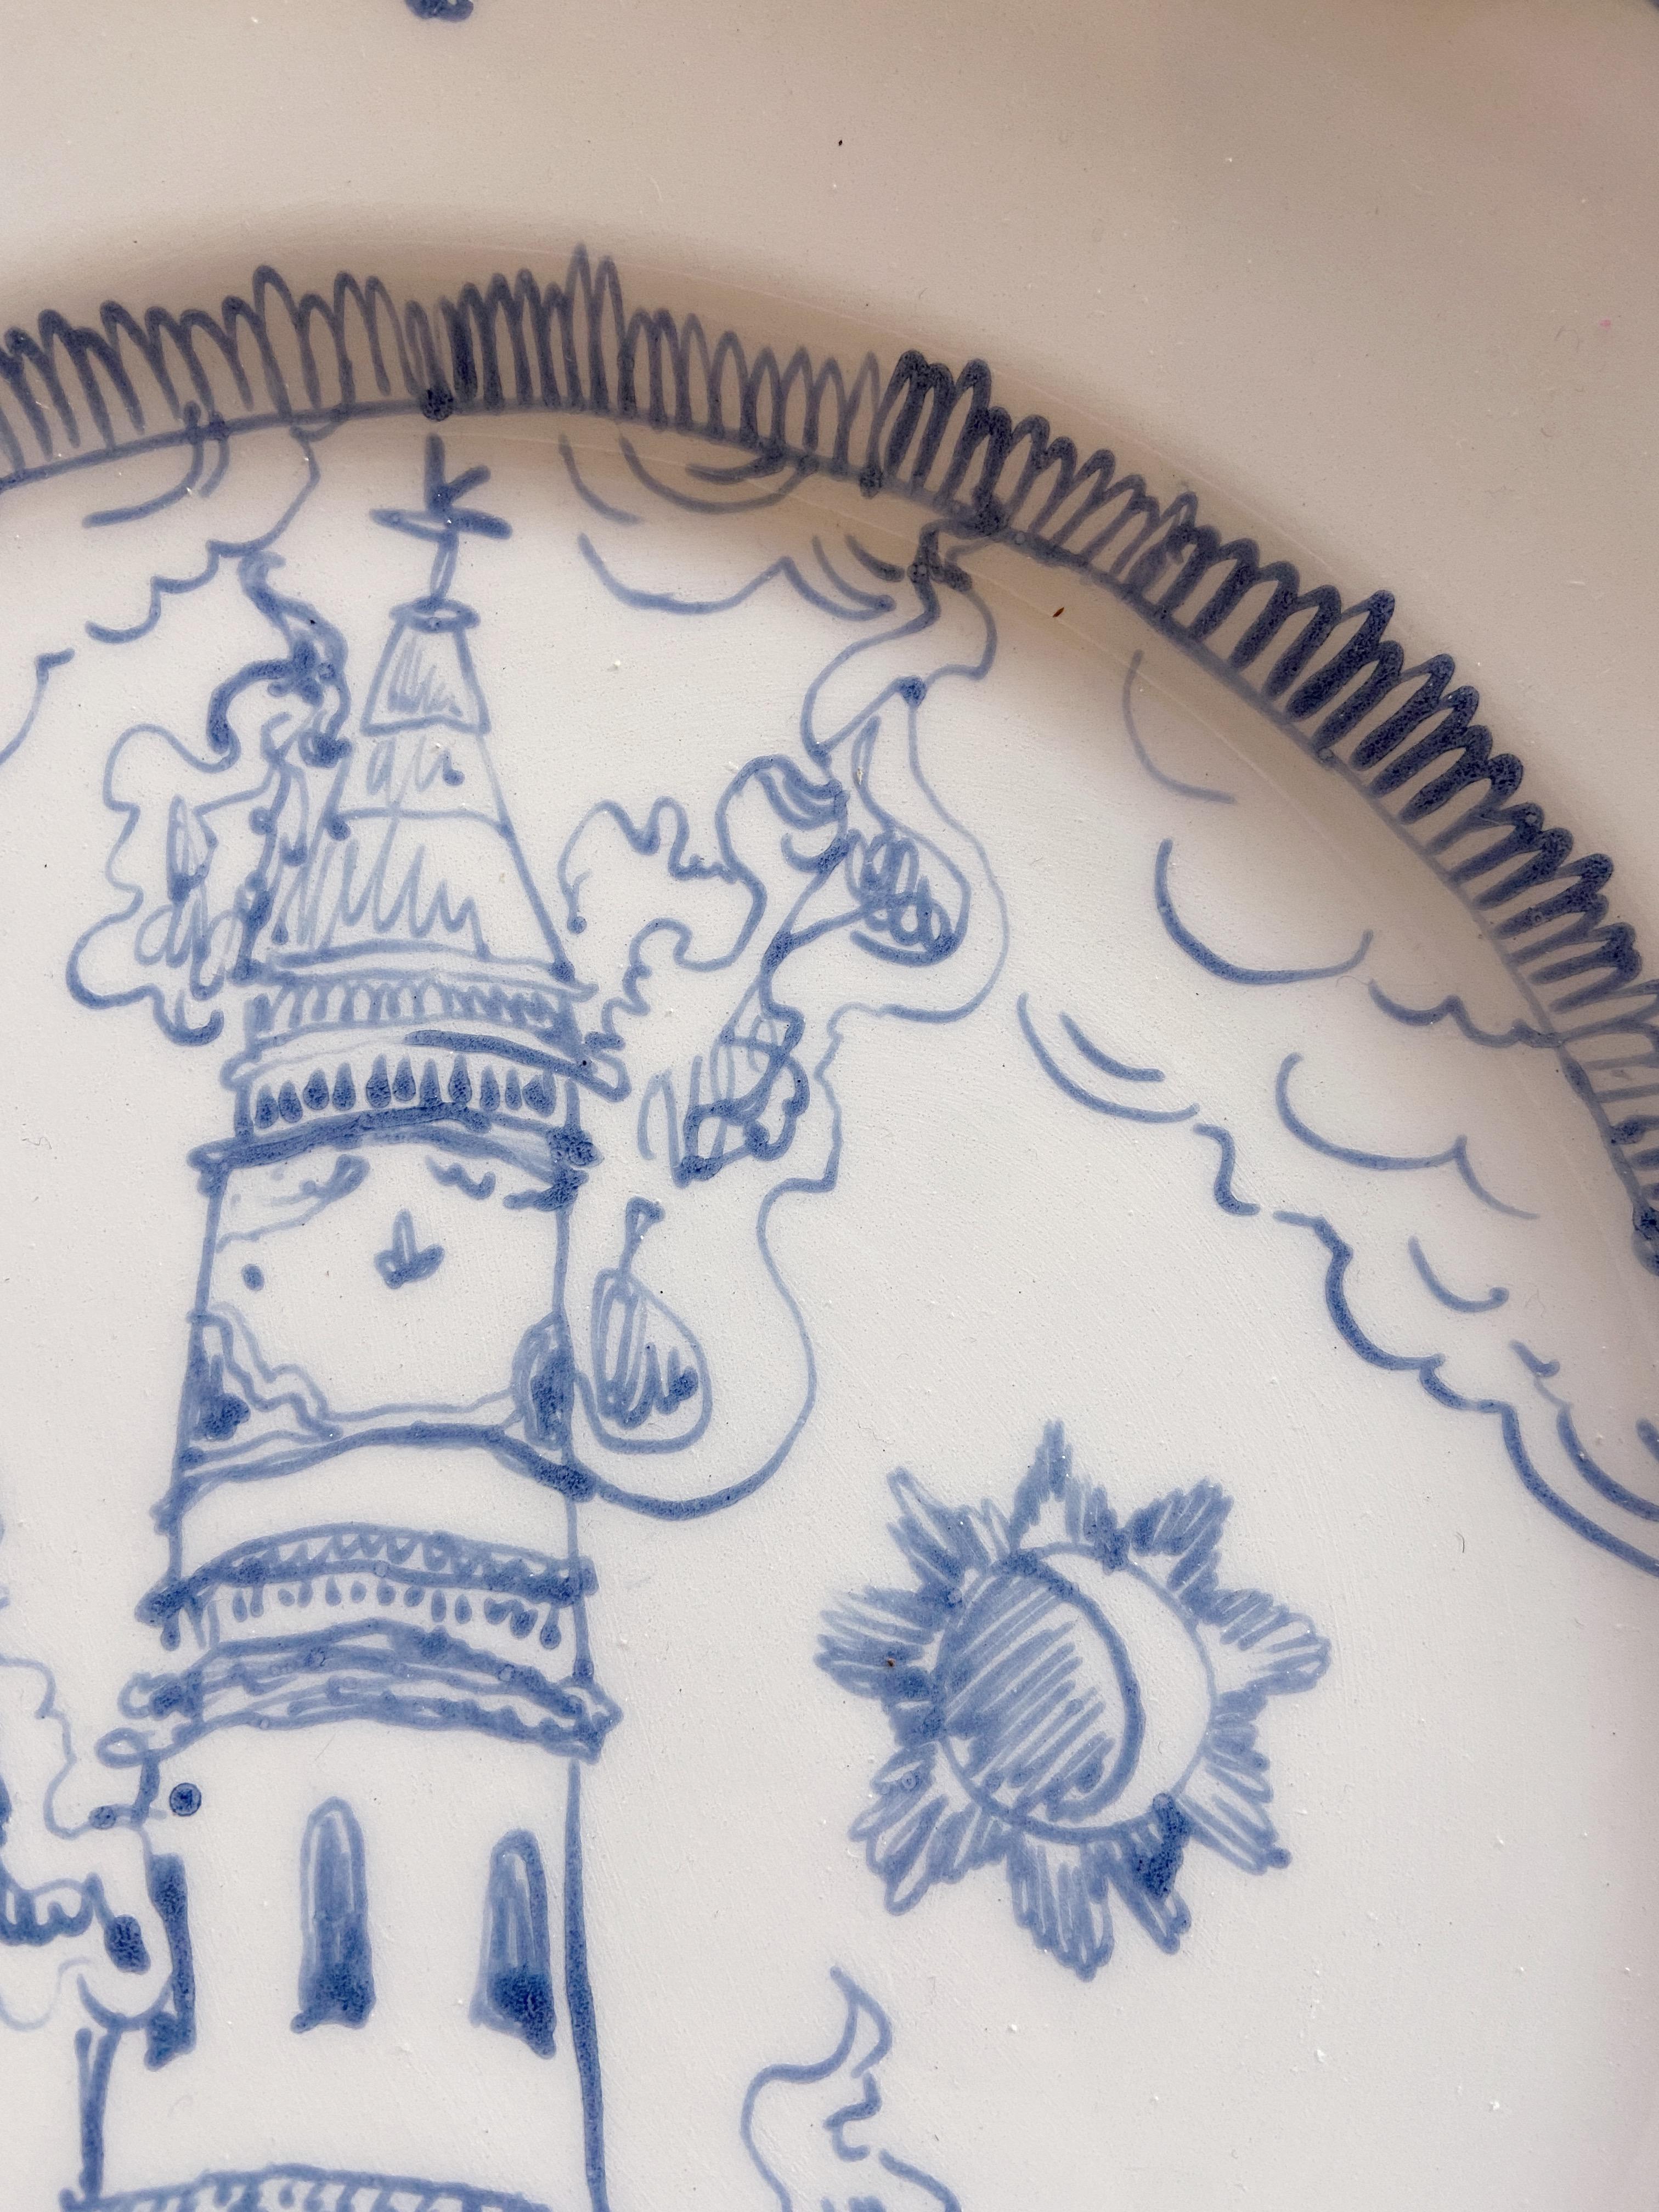 British Hand Painted Tarot Inspired Ceramic Plate: The Tower